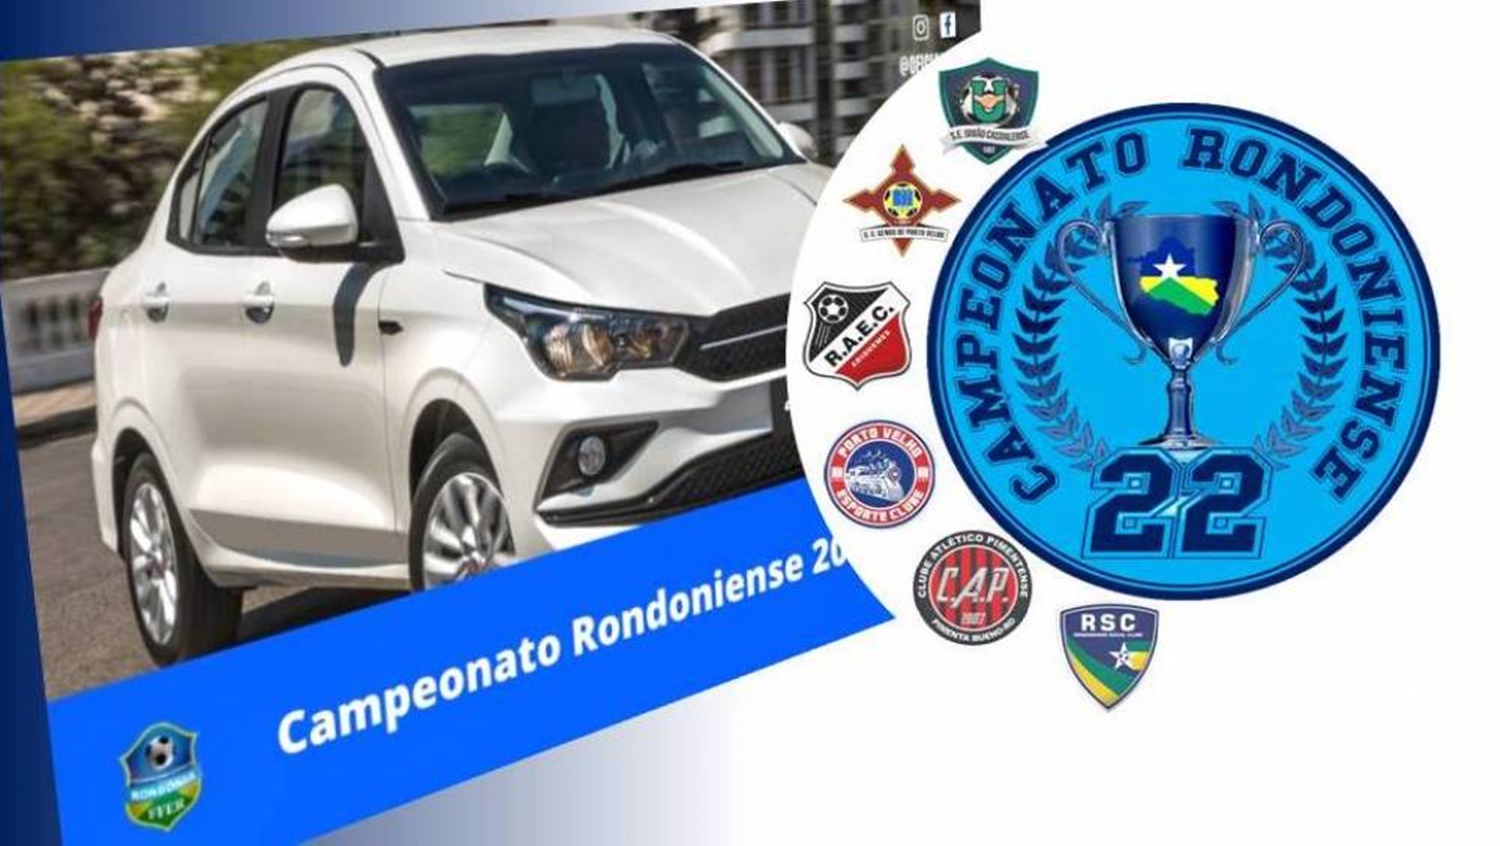 COMPETIÇÃO: Vencedor do Campeonato Rondoniense receberá veículo doado pela CBF